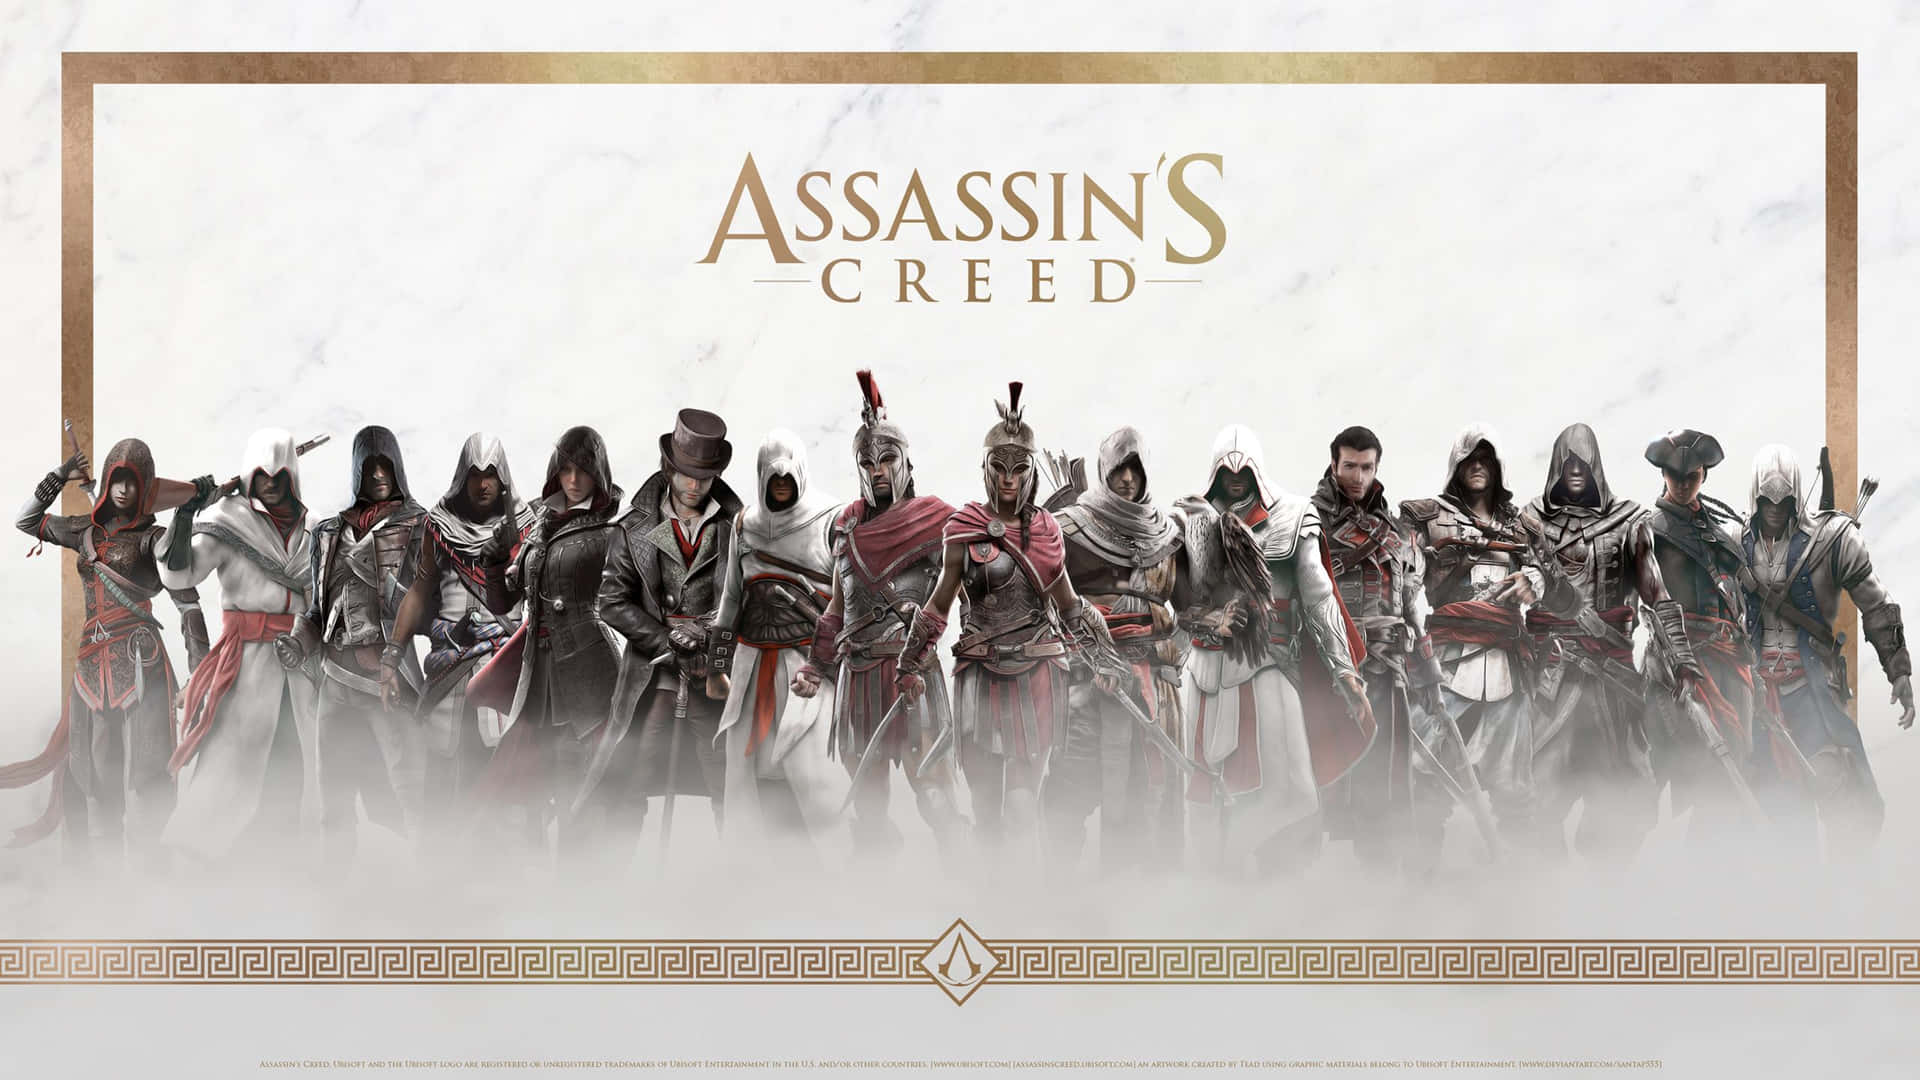 Assassin'screed - En Grupp Karaktärer Framför En Vit Bakgrund.